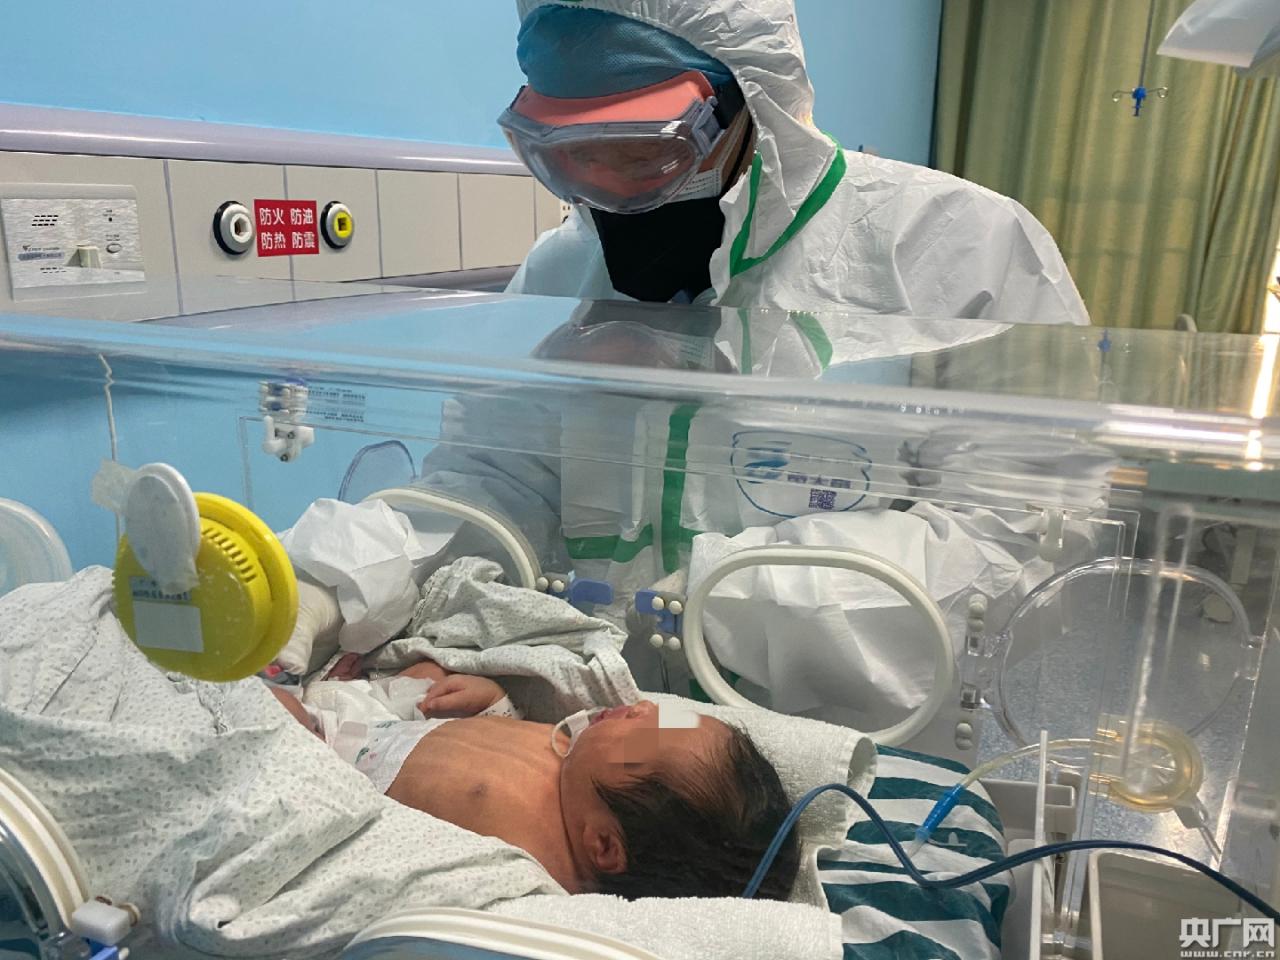 武汉出生30小时新生儿确诊 专家:或存母婴垂直传播